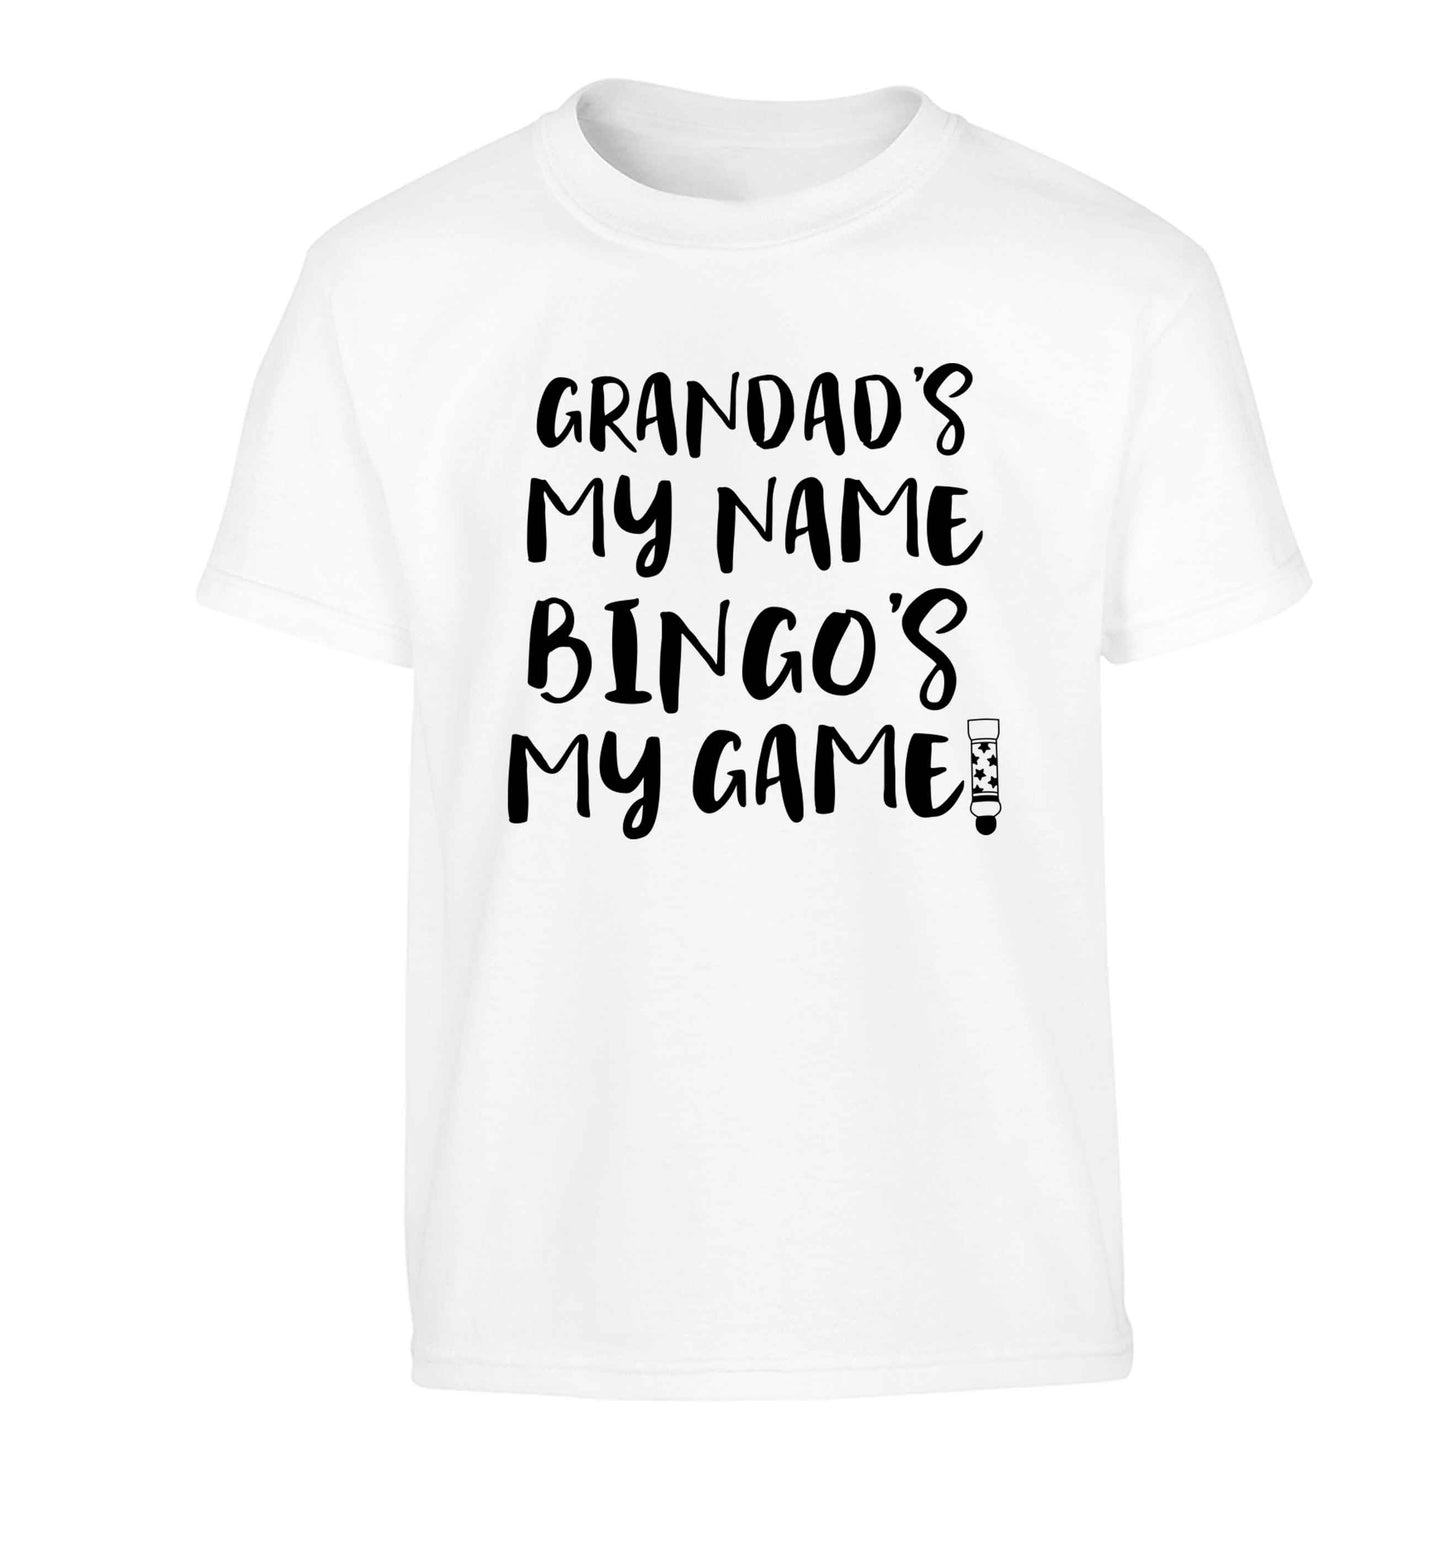 Grandad's my name bingo's my game! Children's white Tshirt 12-13 Years